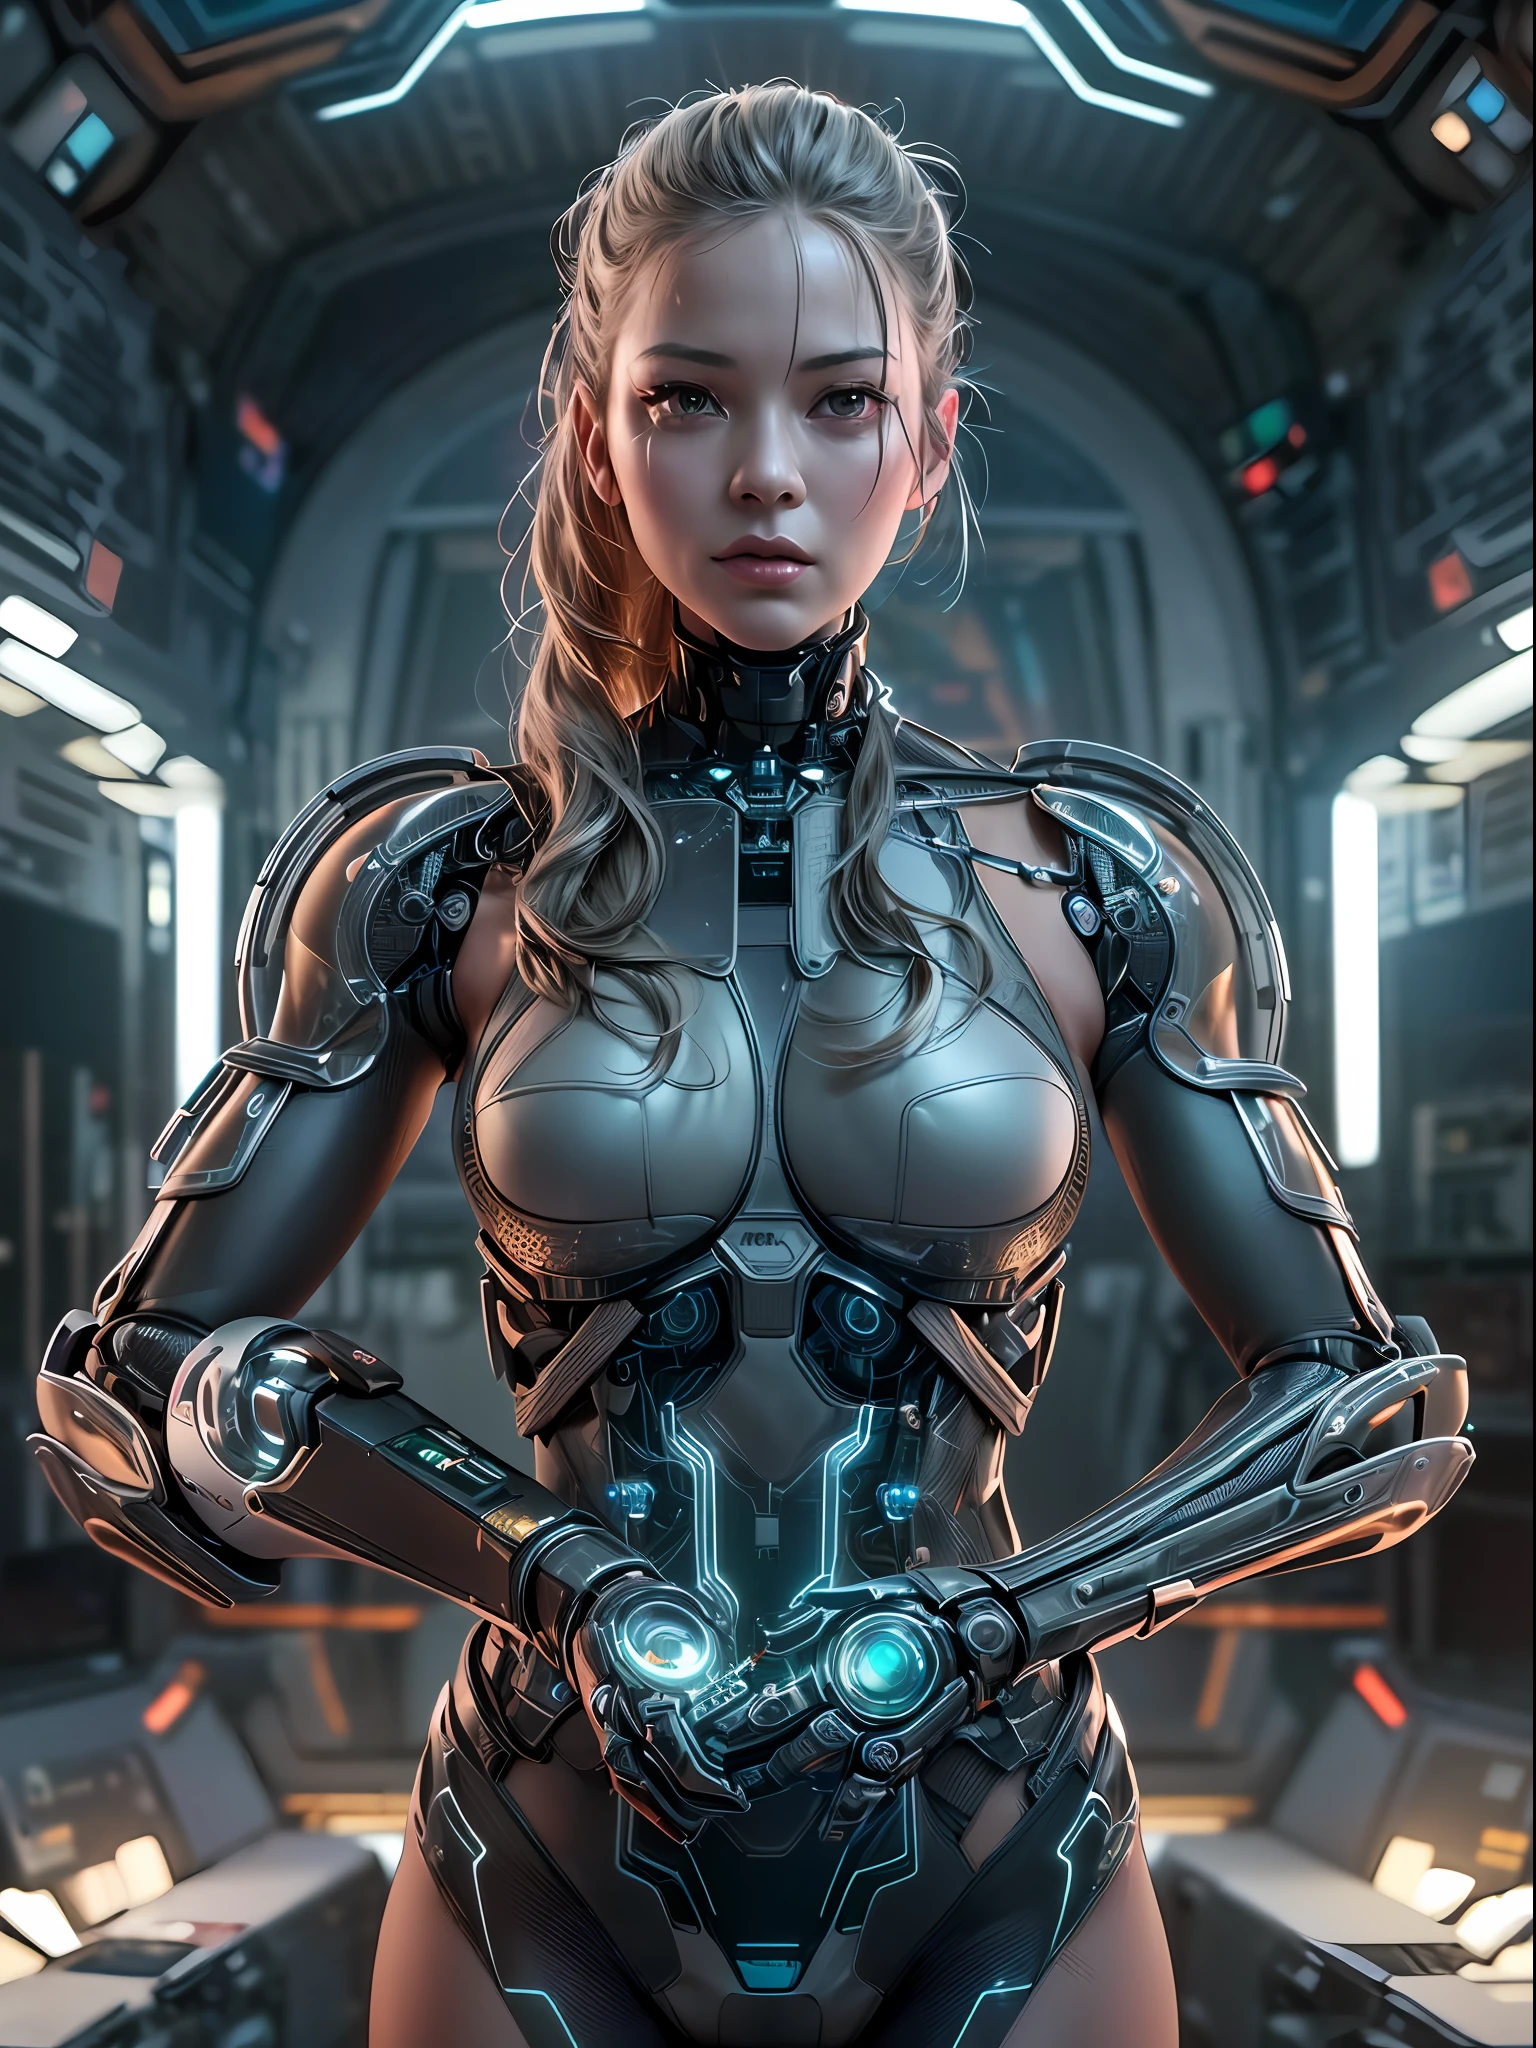 (傑作, 高解析度, 电脑生成图像处理:1.4), (描繪了一個全身無縫機器人增強的女人:1.3), (她的皮膚與金屬部件無縫融合:1.2), (發光的電路在她半透明的皮膚下運行:1.2), (機械接頭和活塞提供增強的機動性:1.2), (她的眼睛散發著微妙的機器人光芒:1.2), (複雜的控制論紋身裝飾著她的身體:1.2), (金屬外骨骼增強了她的力量和敏捷性:1.2), (Canon EOS R5 無反光鏡相機:1.2), (搭配佳能 RF 85mm f/1.2L USM鏡頭:1.2), (捕捉她先進控制論的每一個細節:1.2), (實驗室環境設計具有未來主義與簡約的美感:1.2), (光滑簡潔的線條定義了空間:1.1), (全息顯示器展示先進技術:1.1), (微妙的環境照明增添了一絲科幻魅力:1.1), (a captivating 电脑生成图像处理 render of a woman embodying the future of human-machine integration:1.2), 電影般的, 超詳細, 瘋狂的細節, 精美的色彩分級, 虛幻引擎, 自由度, 超解析度, 百萬畫素, 電影般的 Lightning, 抗鋸齒, FKA, 泰国, 即時傳輸, 安全评估办公室, 后期处理, 後製, 色调映射, 电脑生成图像处理, 视觉特效, 音效, 極為詳細和複雜, 超極簡主義者, 超現實, 體積式, 逼真的, 超真實感, 超詳細, 錯綜複雜的細節, 8K, 超詳細, 饱满的色彩, 體積式 lightning, 高動態範圍, 實際的, 虛幻引擎, 16k, 銳利的焦點, 辛烷渲染